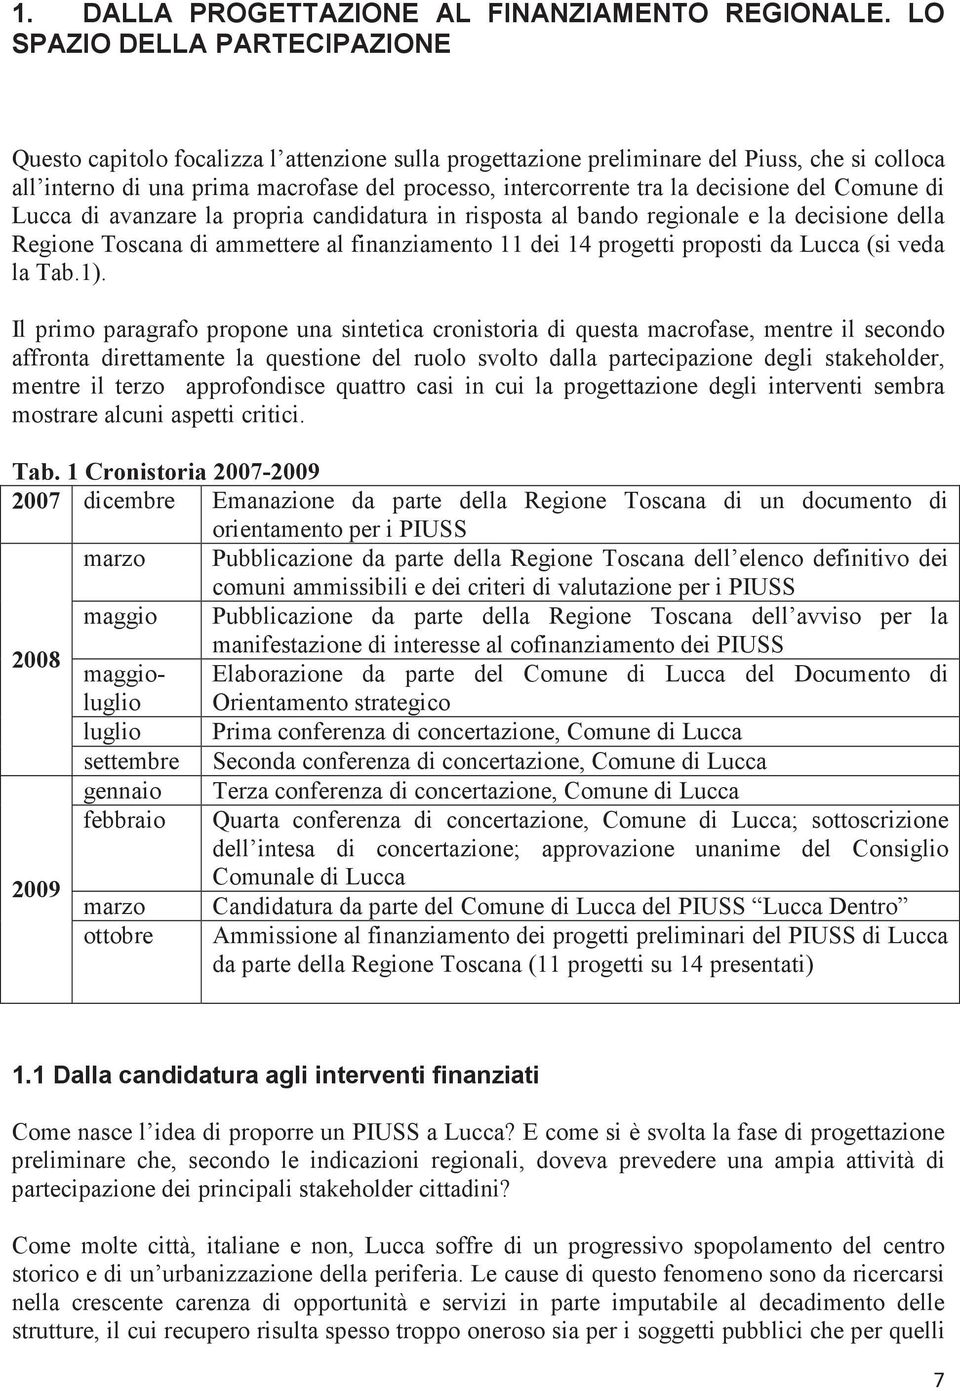 decisione del Comune di Lucca di avanzare la propria candidatura in risposta al bando regionale e la decisione della Regione Toscana di ammettere al finanziamento 11 dei 14 progetti proposti da Lucca